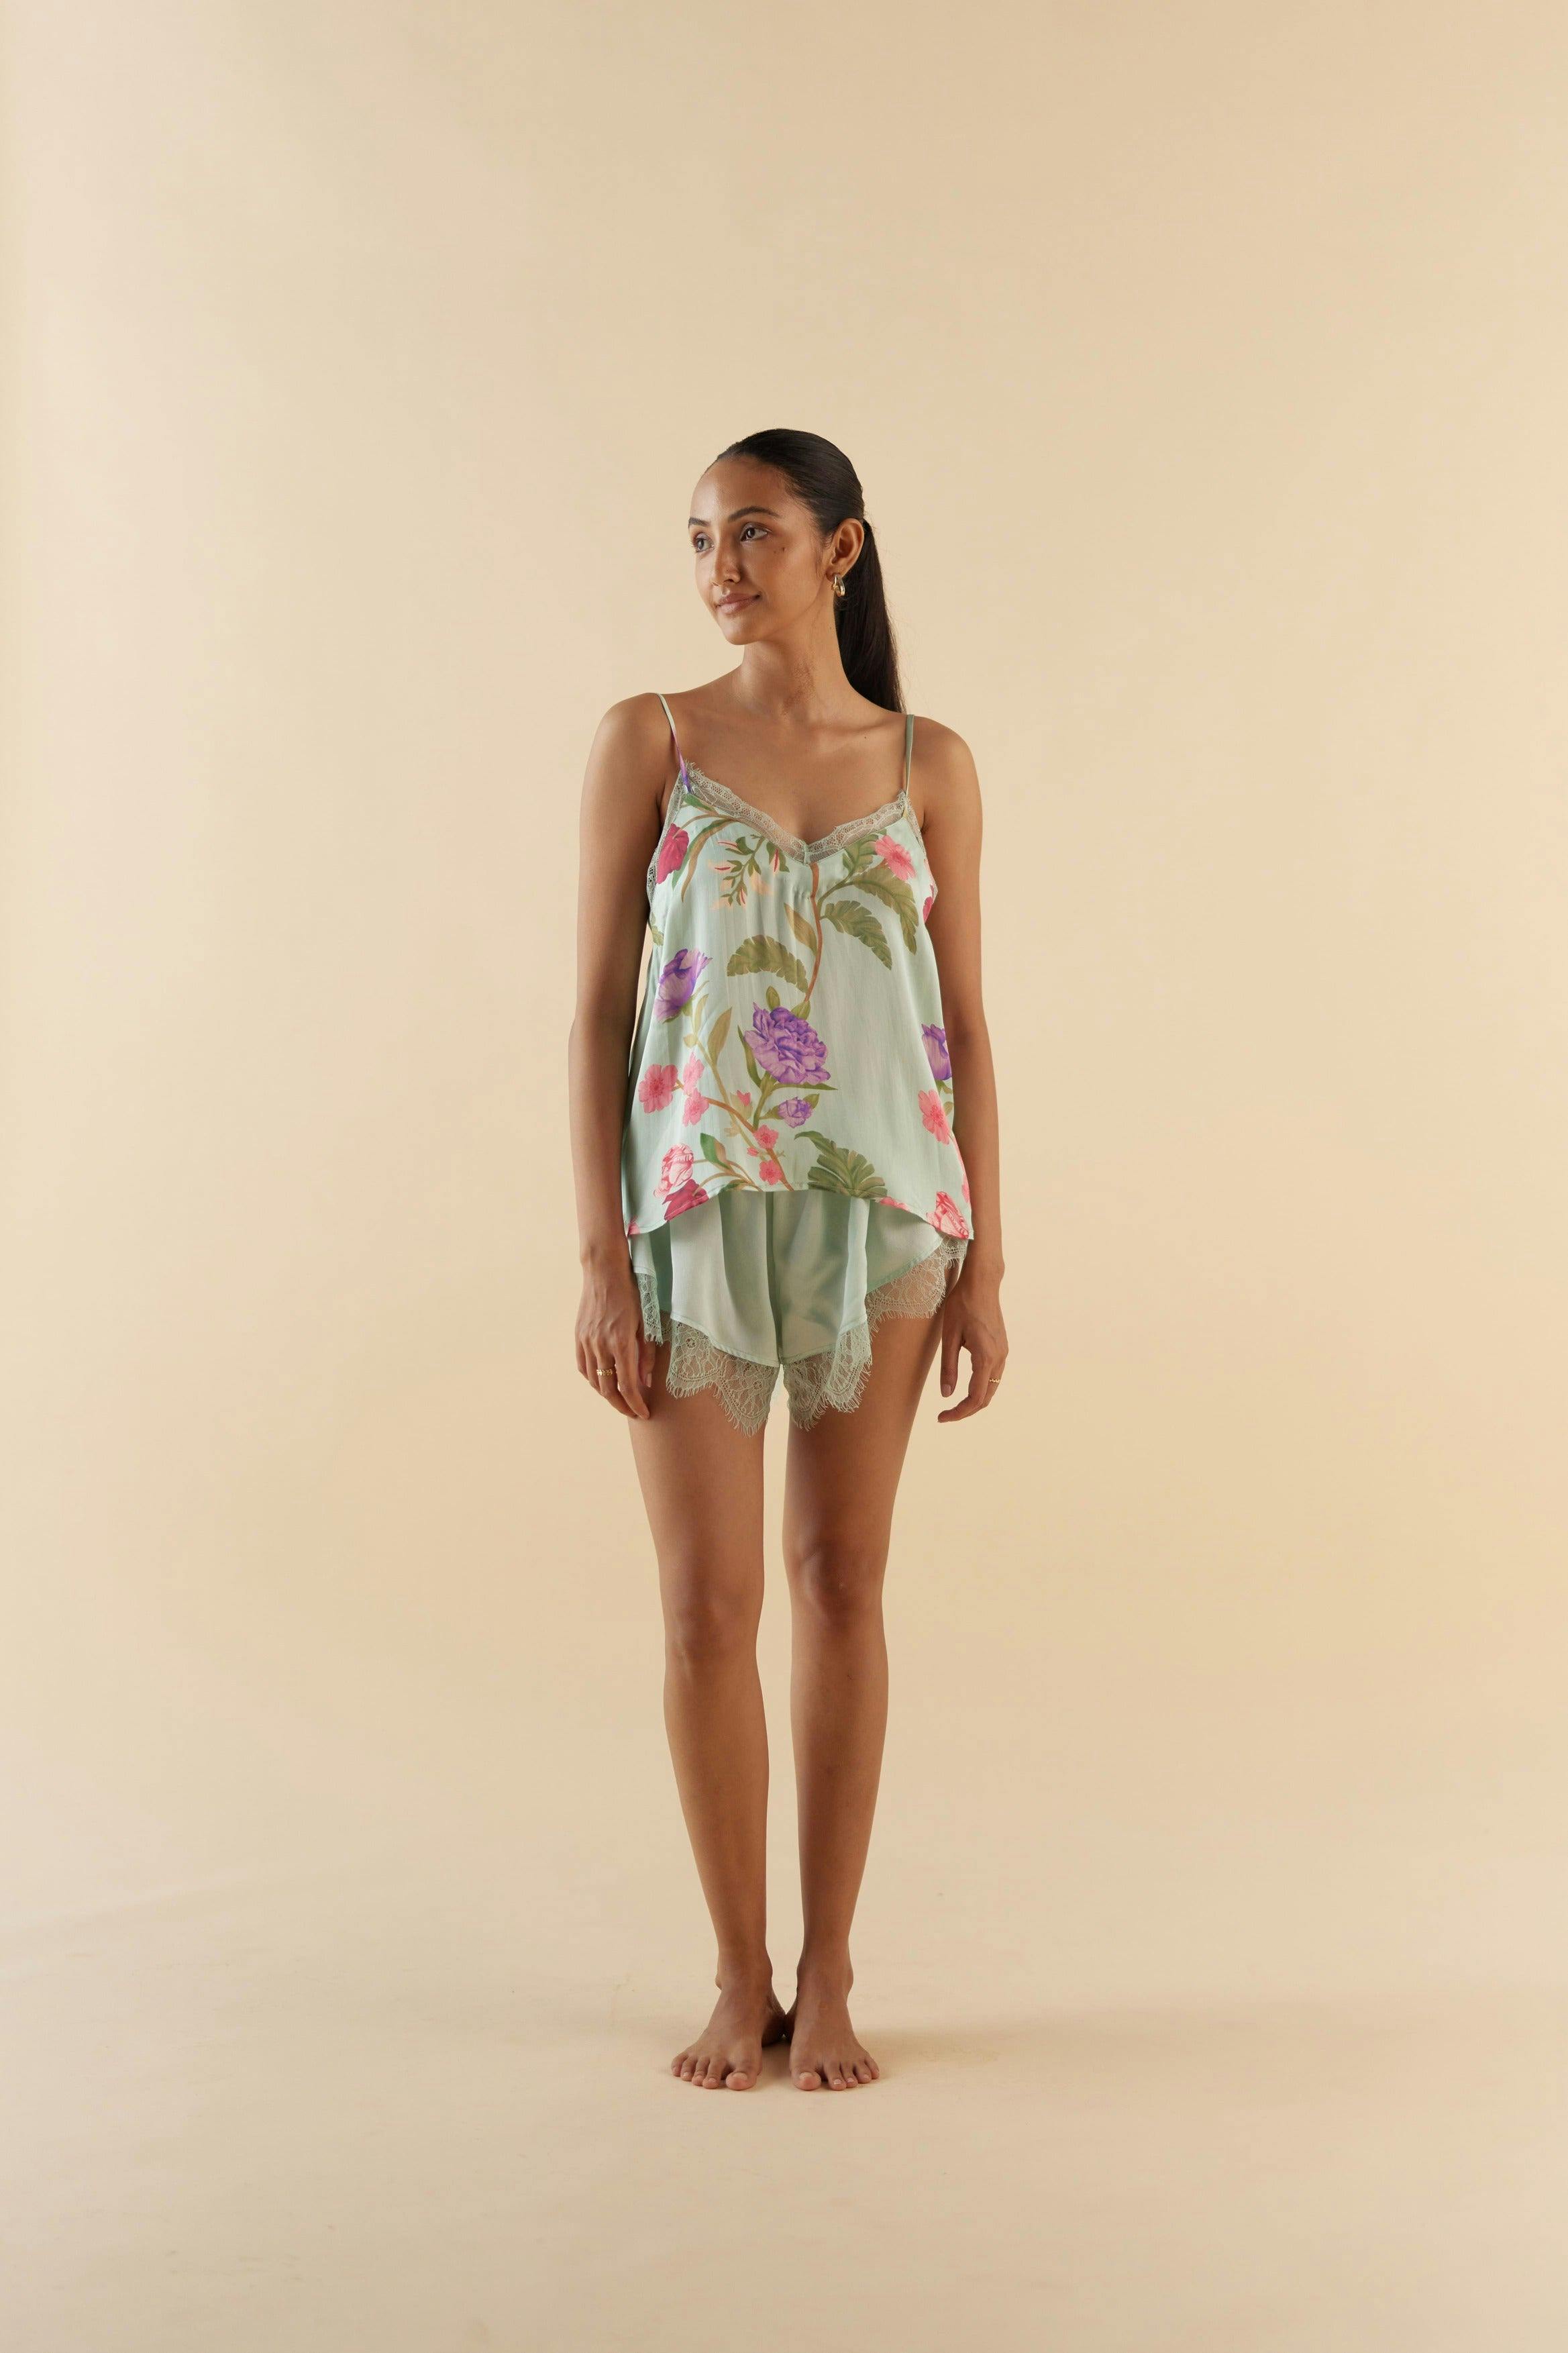 Thumbnail preview #2 for Celeste Floral Dream Lace Shorts